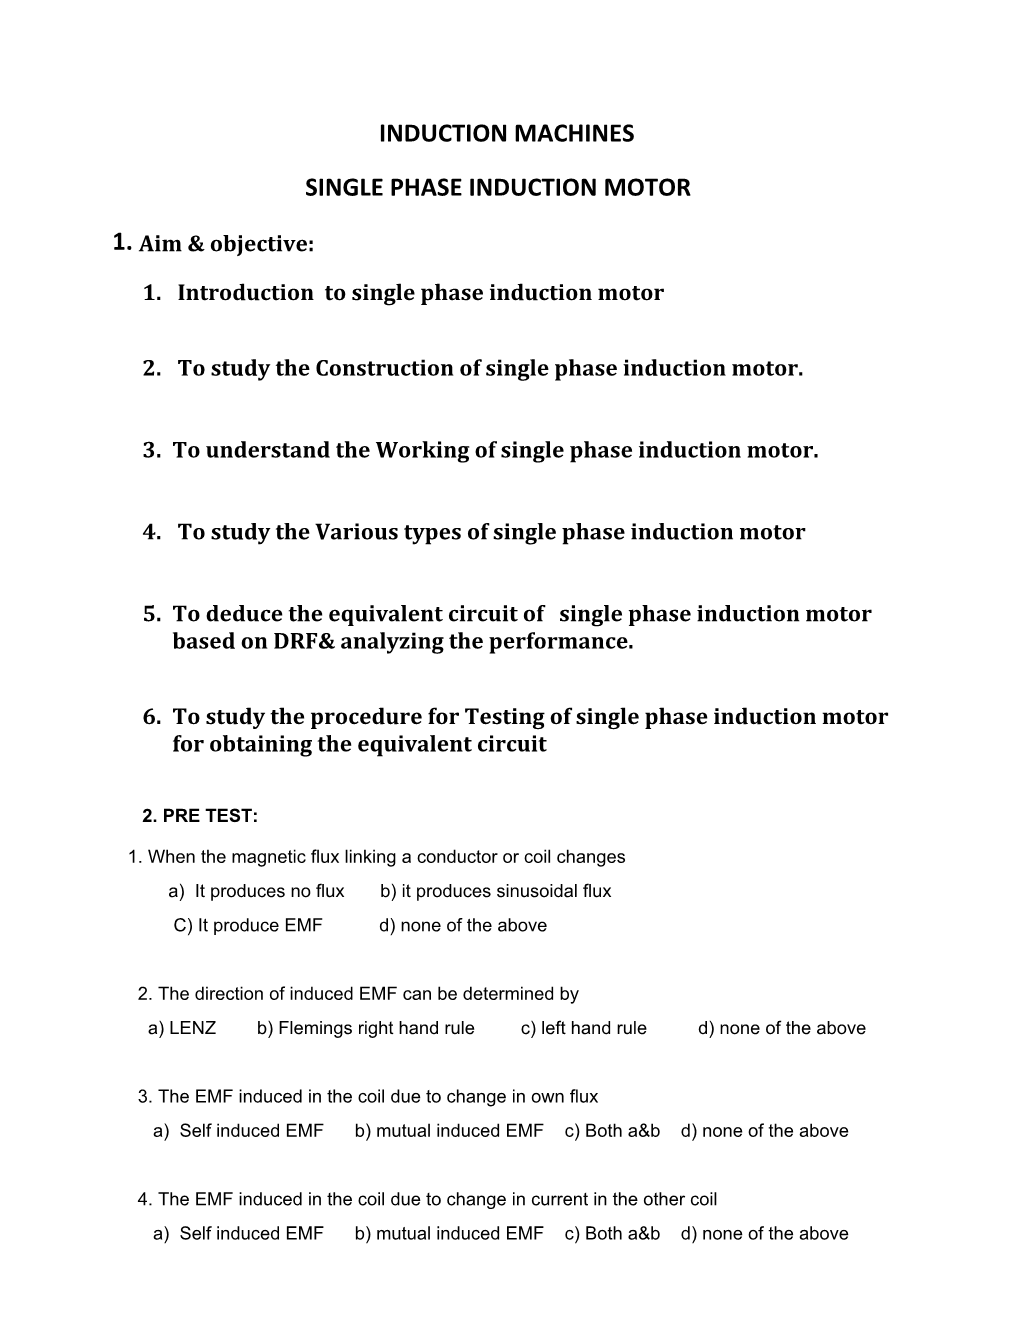 Induction Machines Single Phase Induction Motor